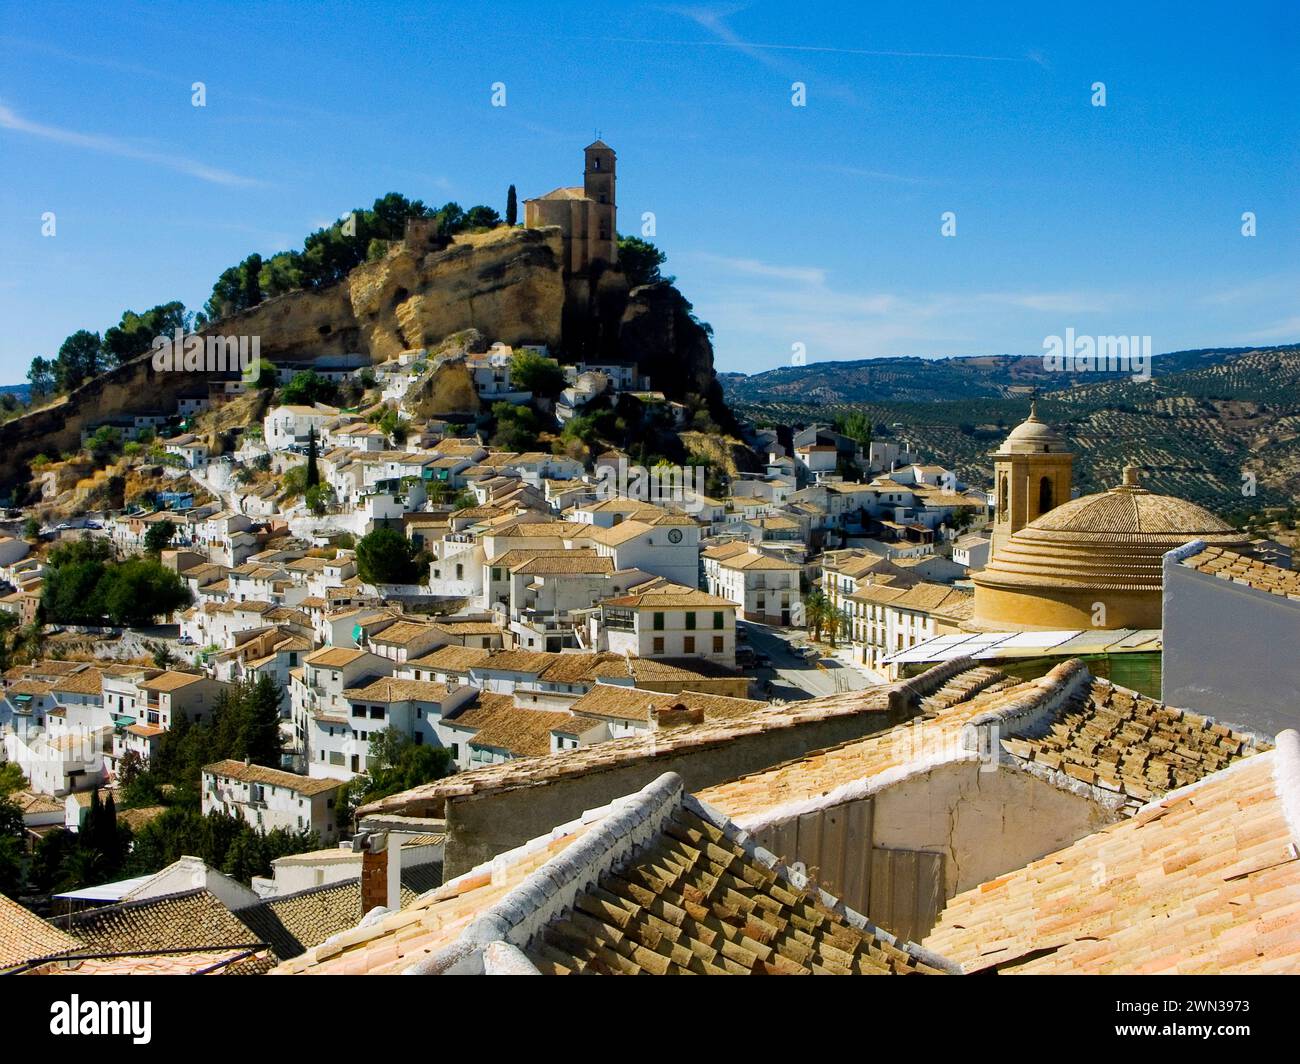 Montefrio, Spagna, le rovine di un castello moresco si trovano vicino al punto più alto. Montefrio fu la principale fortezza di frontiera dei Mori nel XV secolo Foto Stock